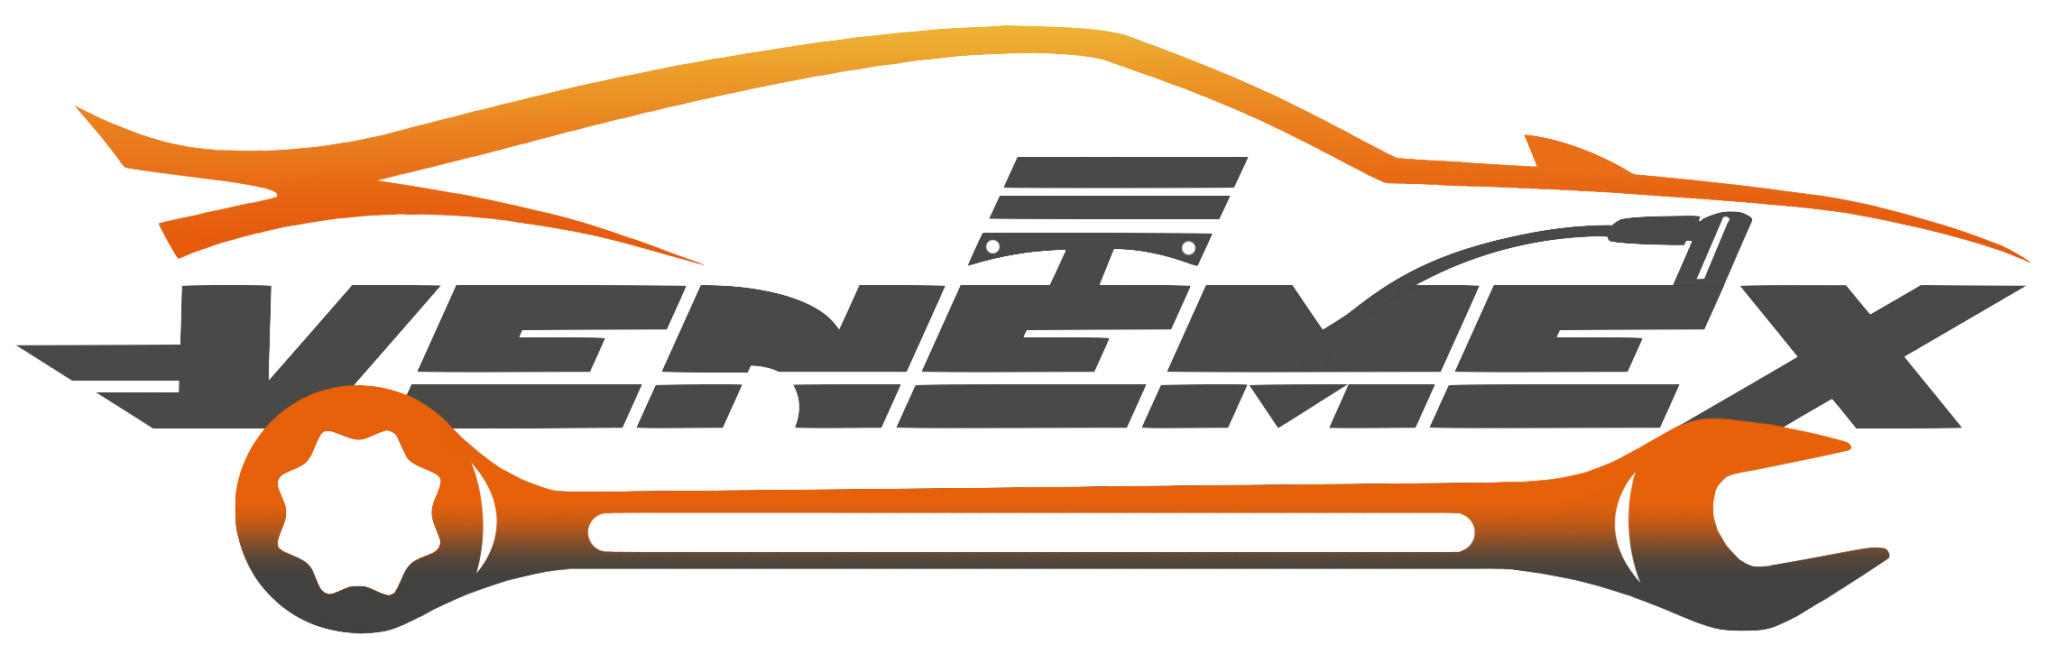 Venemex Auto